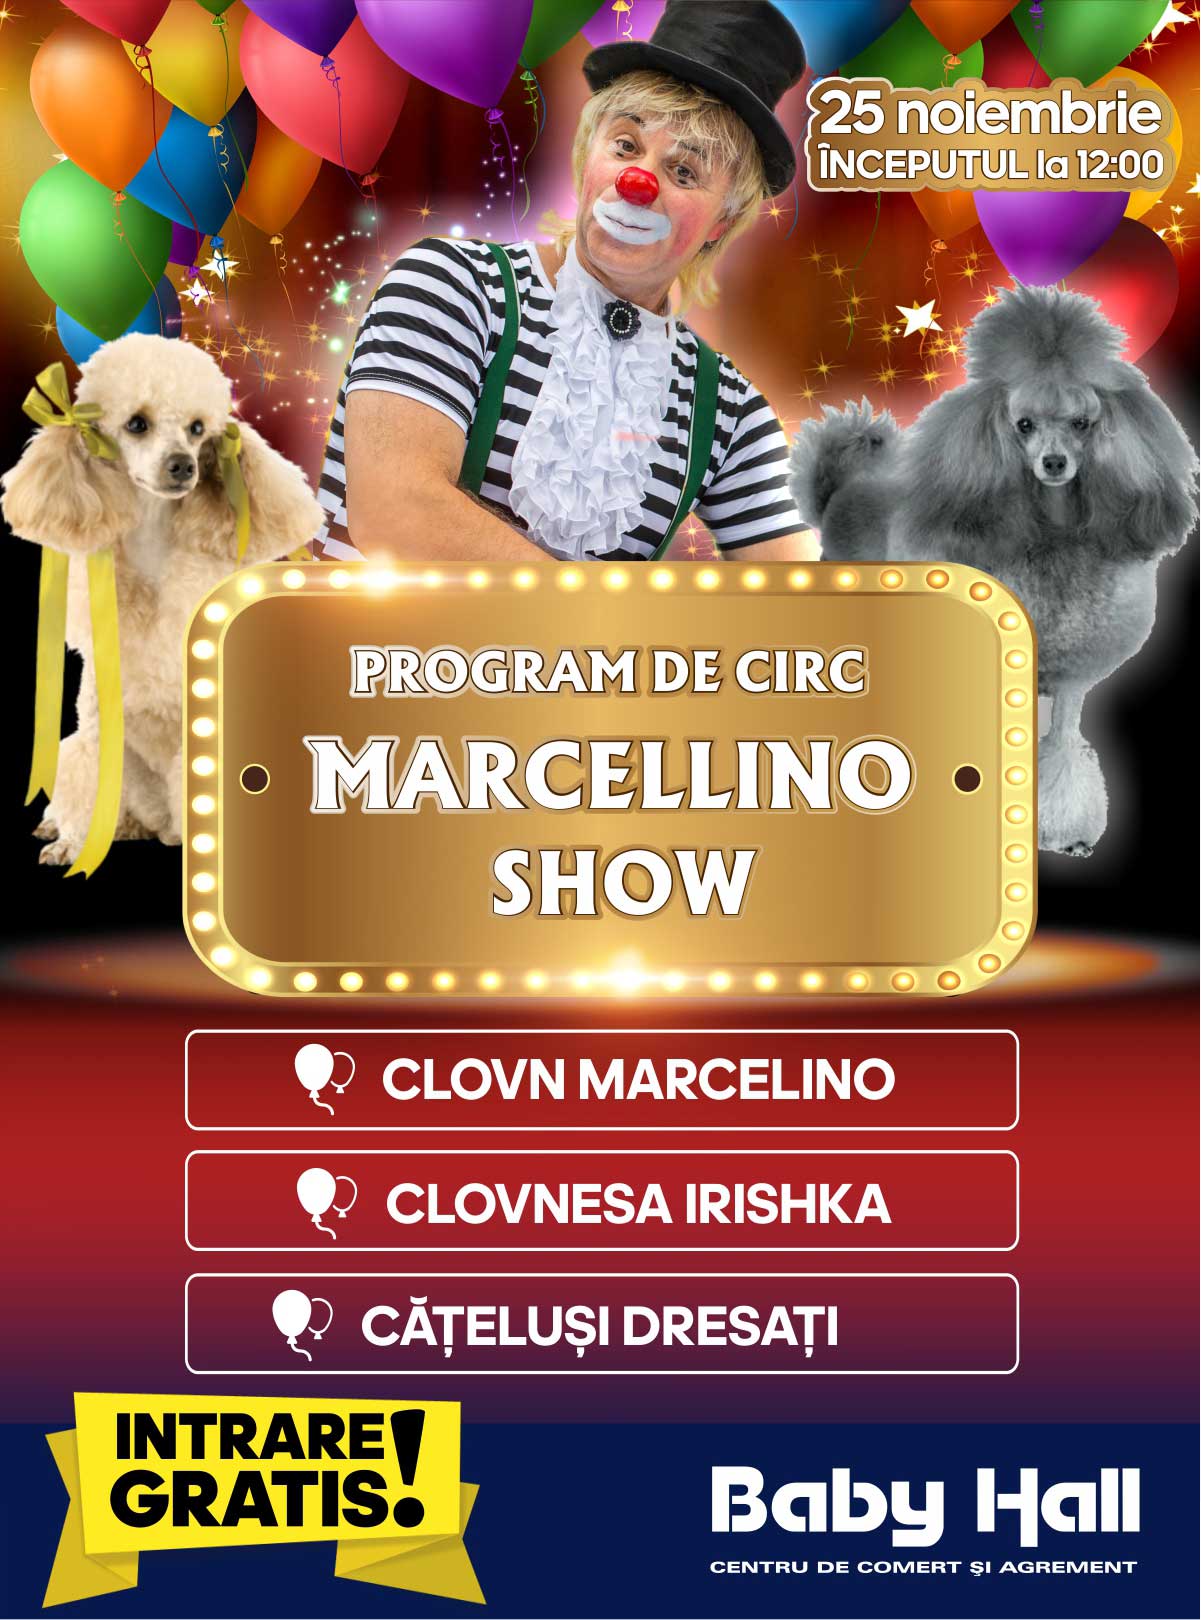 Marcelino-show și cățeluși dresați